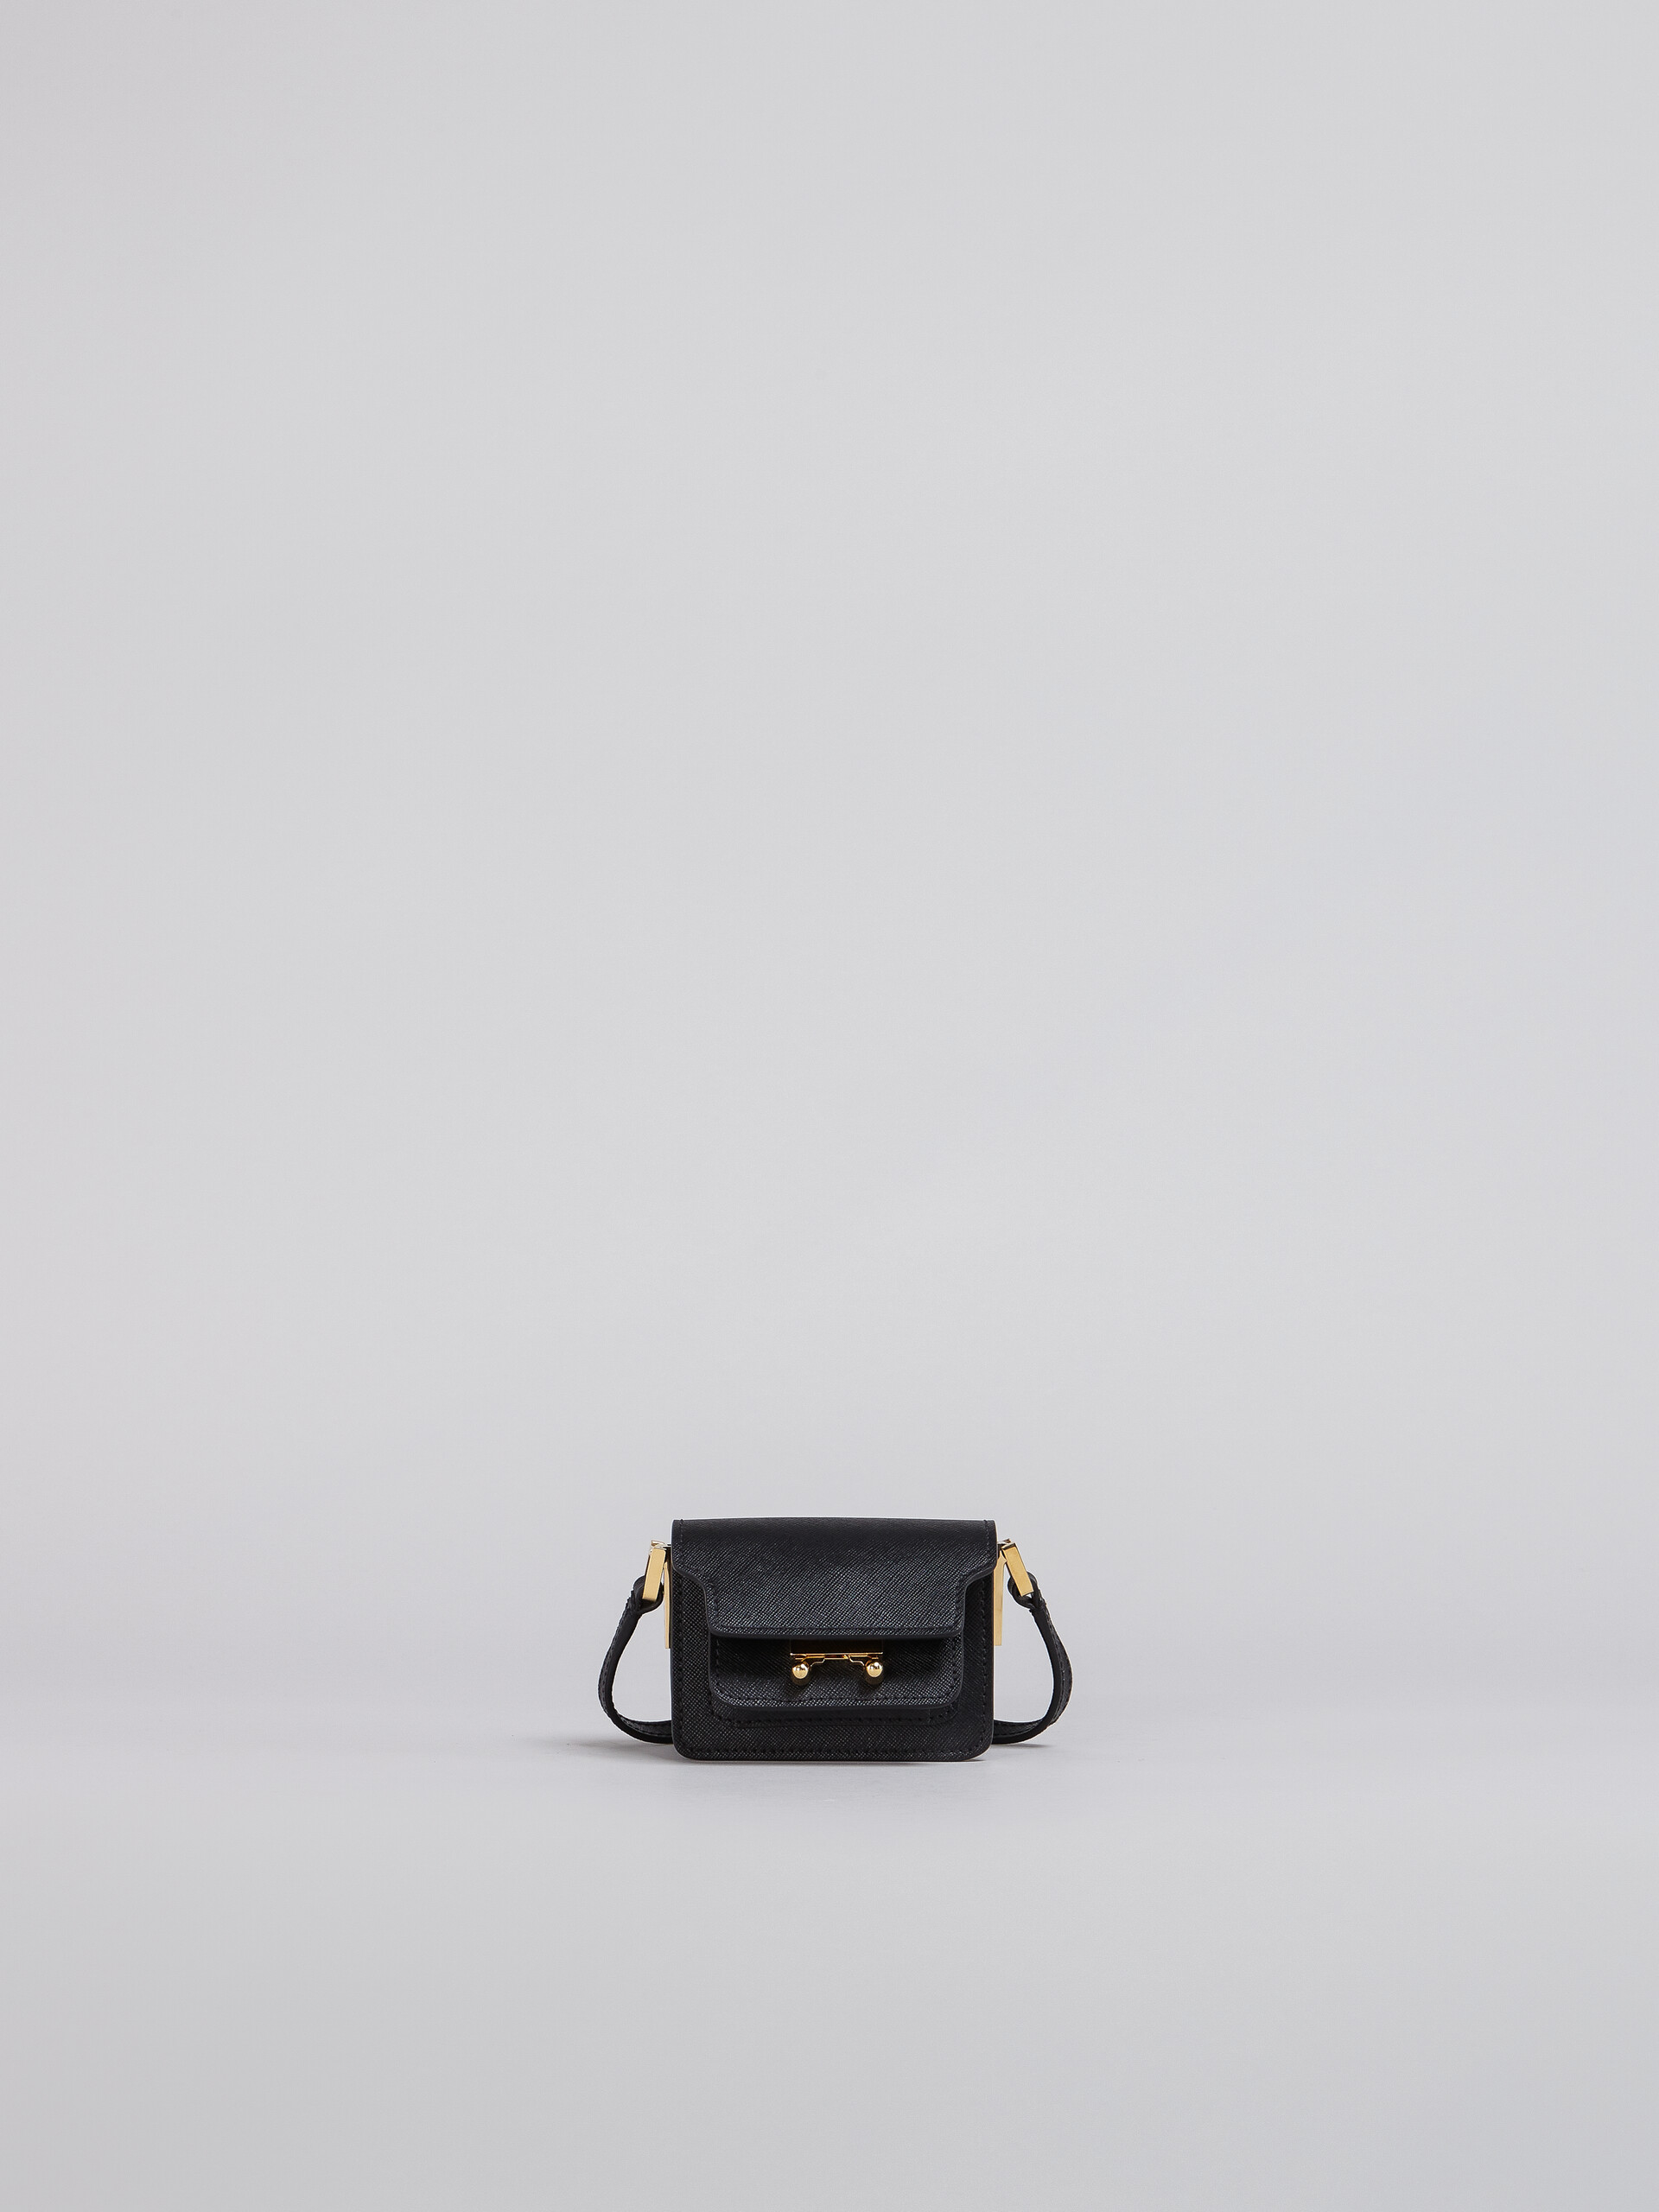 Tasche TRUNK aus schwarzem Saffiano-Kalbsleder - Schultertaschen - Image 1